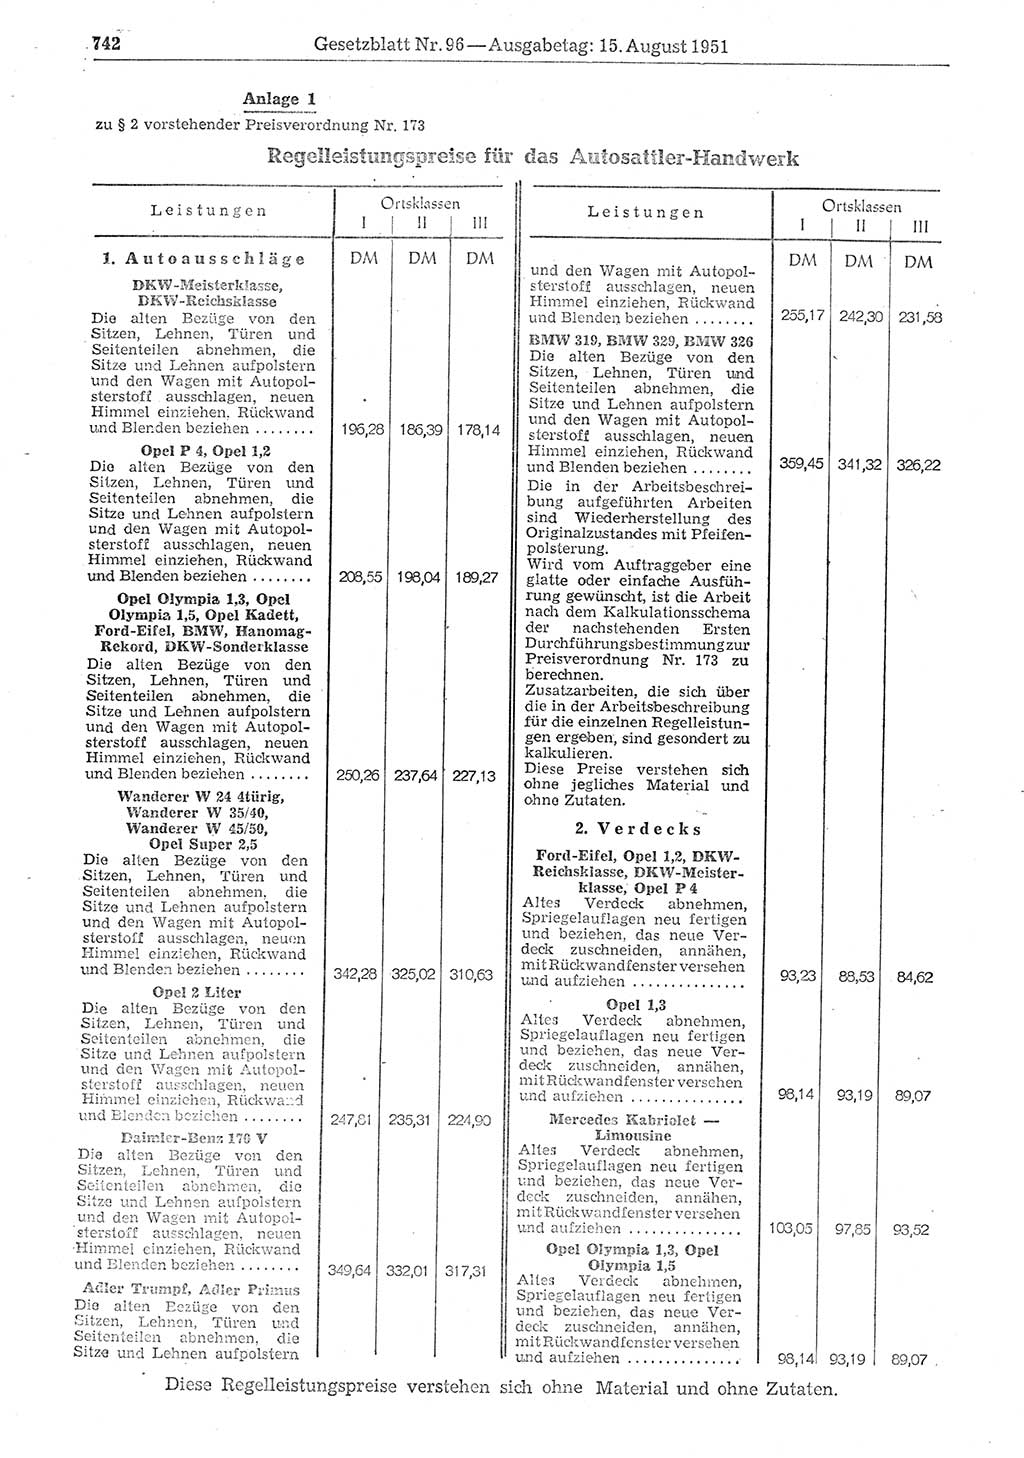 Gesetzblatt (GBl.) der Deutschen Demokratischen Republik (DDR) 1951, Seite 742 (GBl. DDR 1951, S. 742)